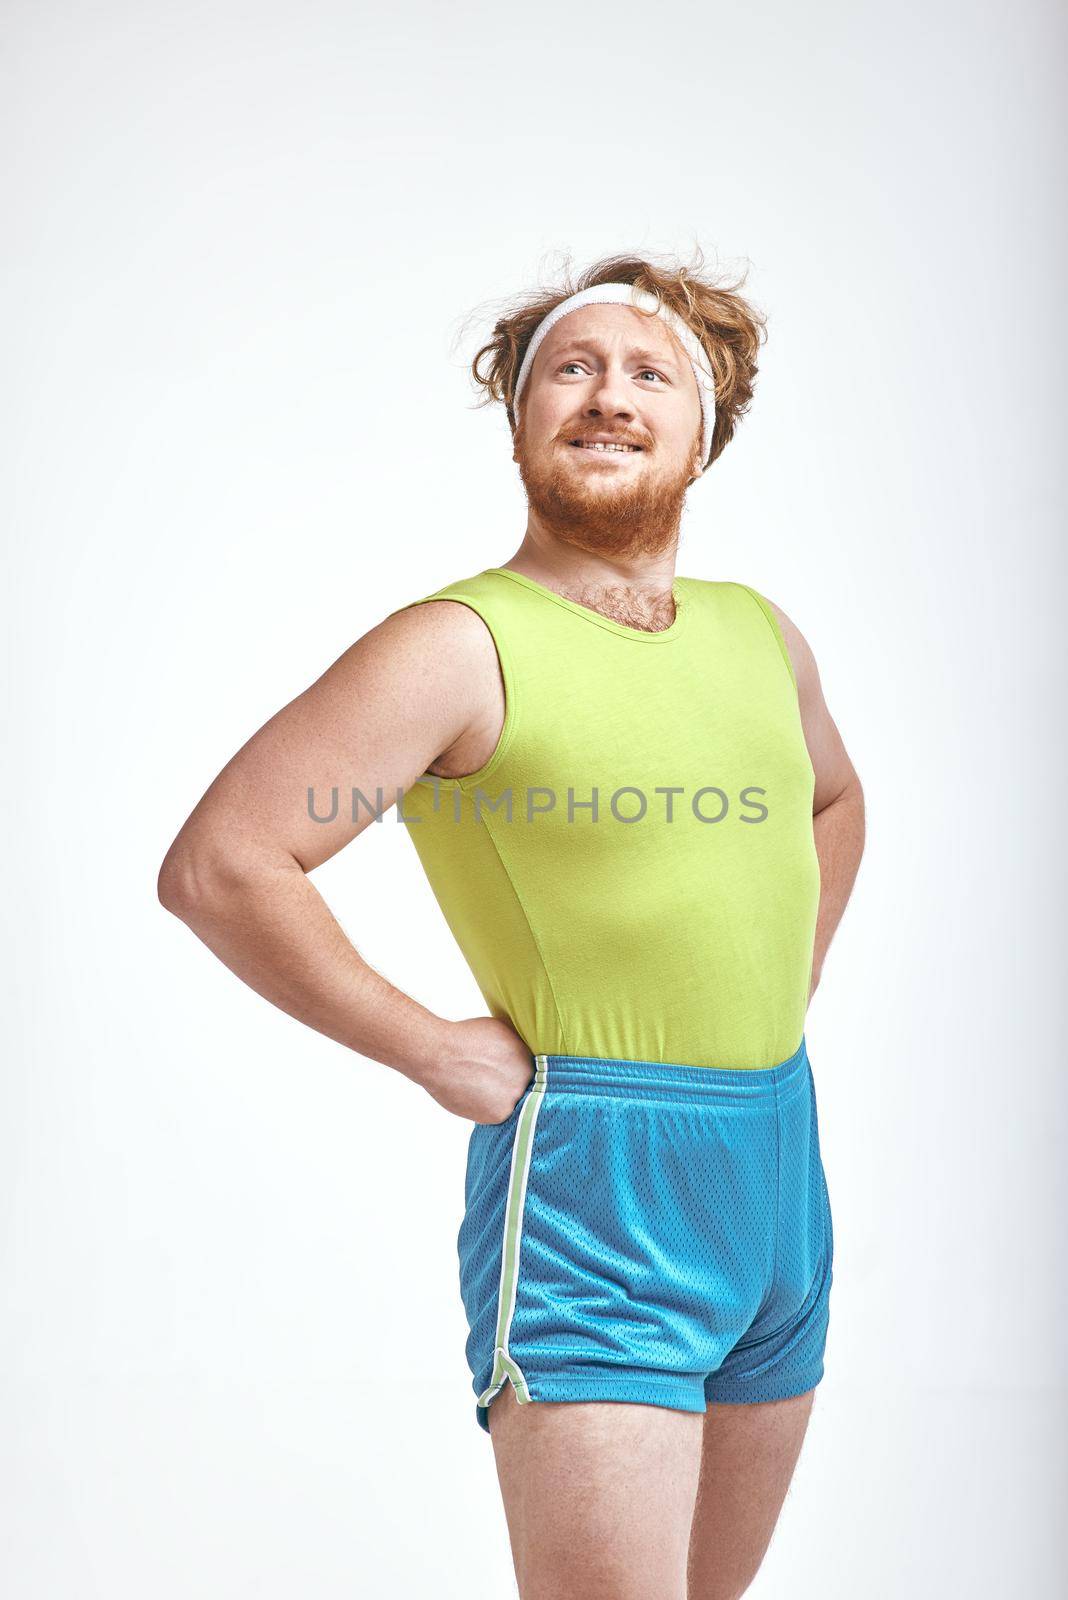 Red haired, bearded, plump man is proud to wearing sportswear by friendsstock